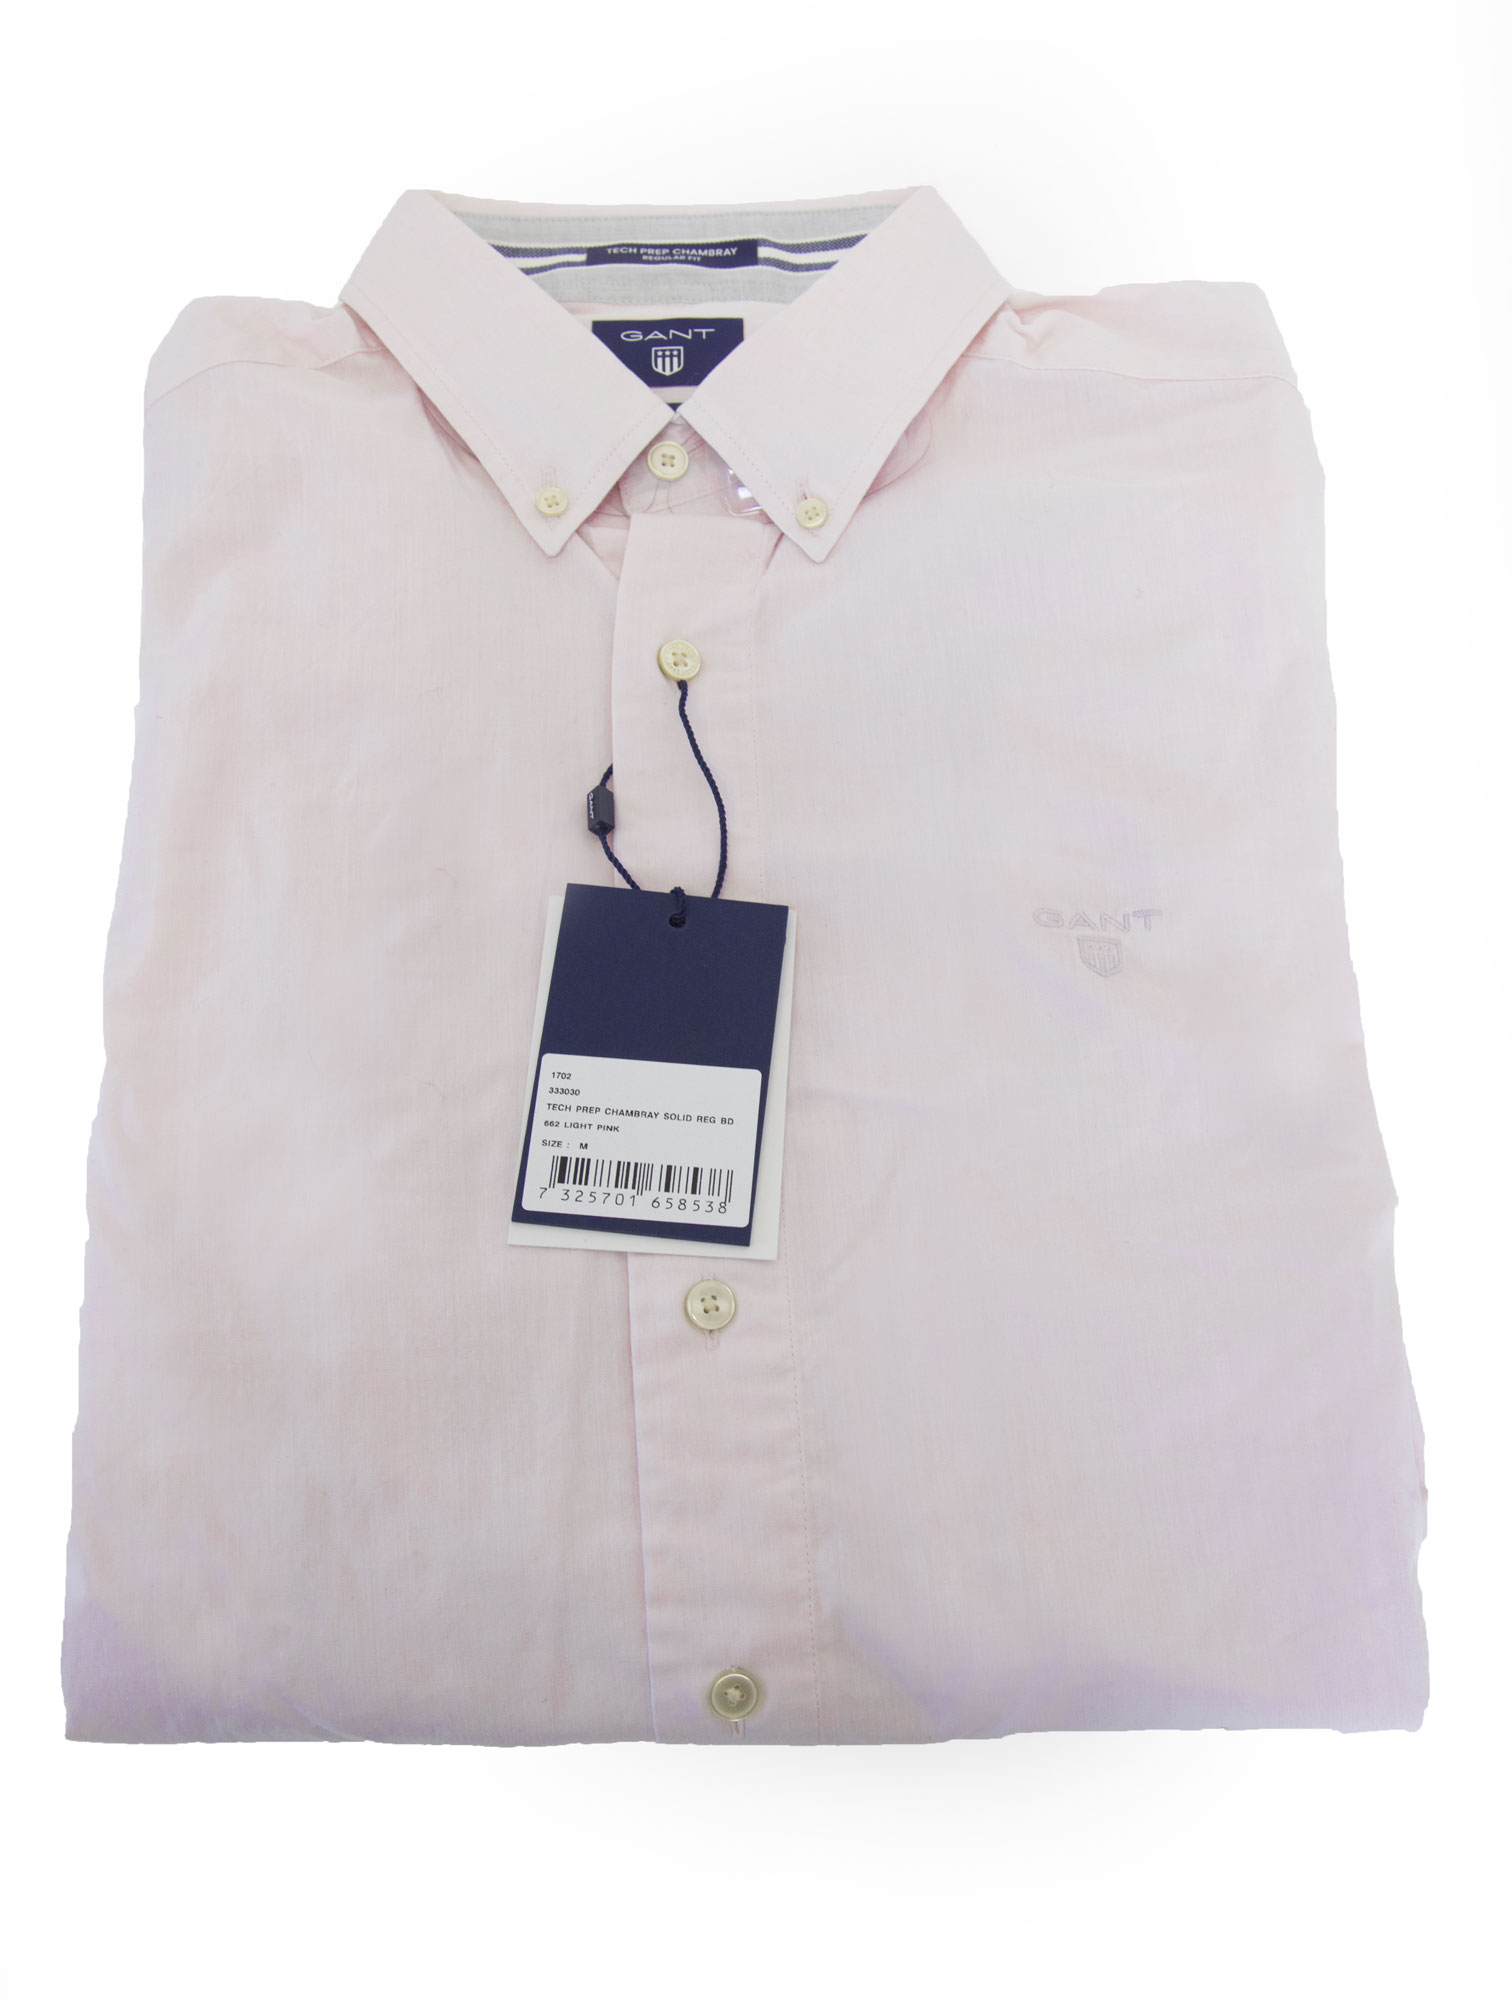 Gant USA GANT Men's Pink Tech Prep Chambray Button Down Shirt 333030 Size M $135 NWT